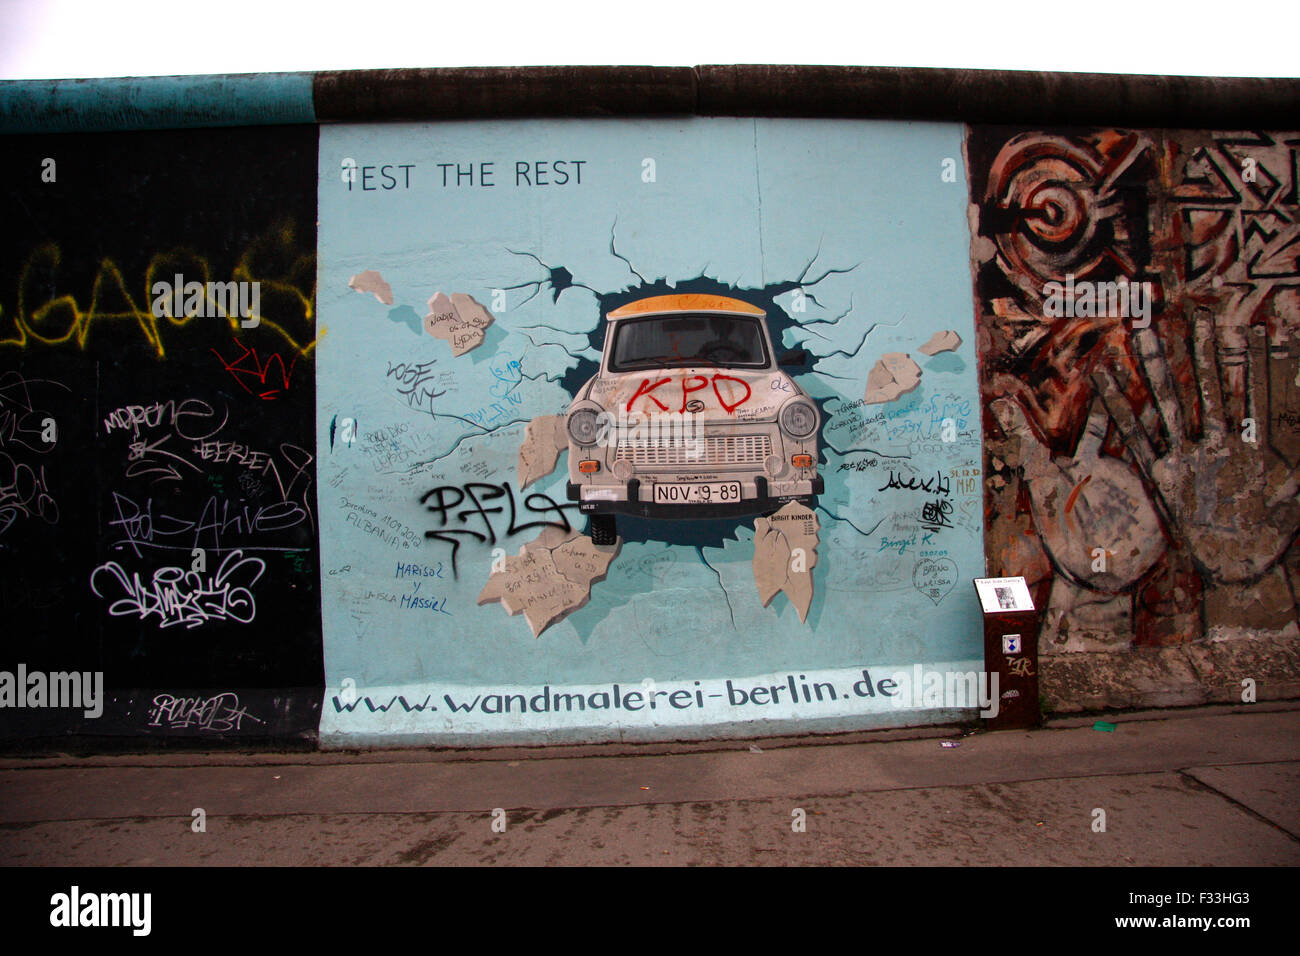 Impressionen: das Mauerstueck an der East Side Gallery mit dem Bild von Birgit Kinder 'Test the Rest', Zustand  April 2013, Berl Stock Photo